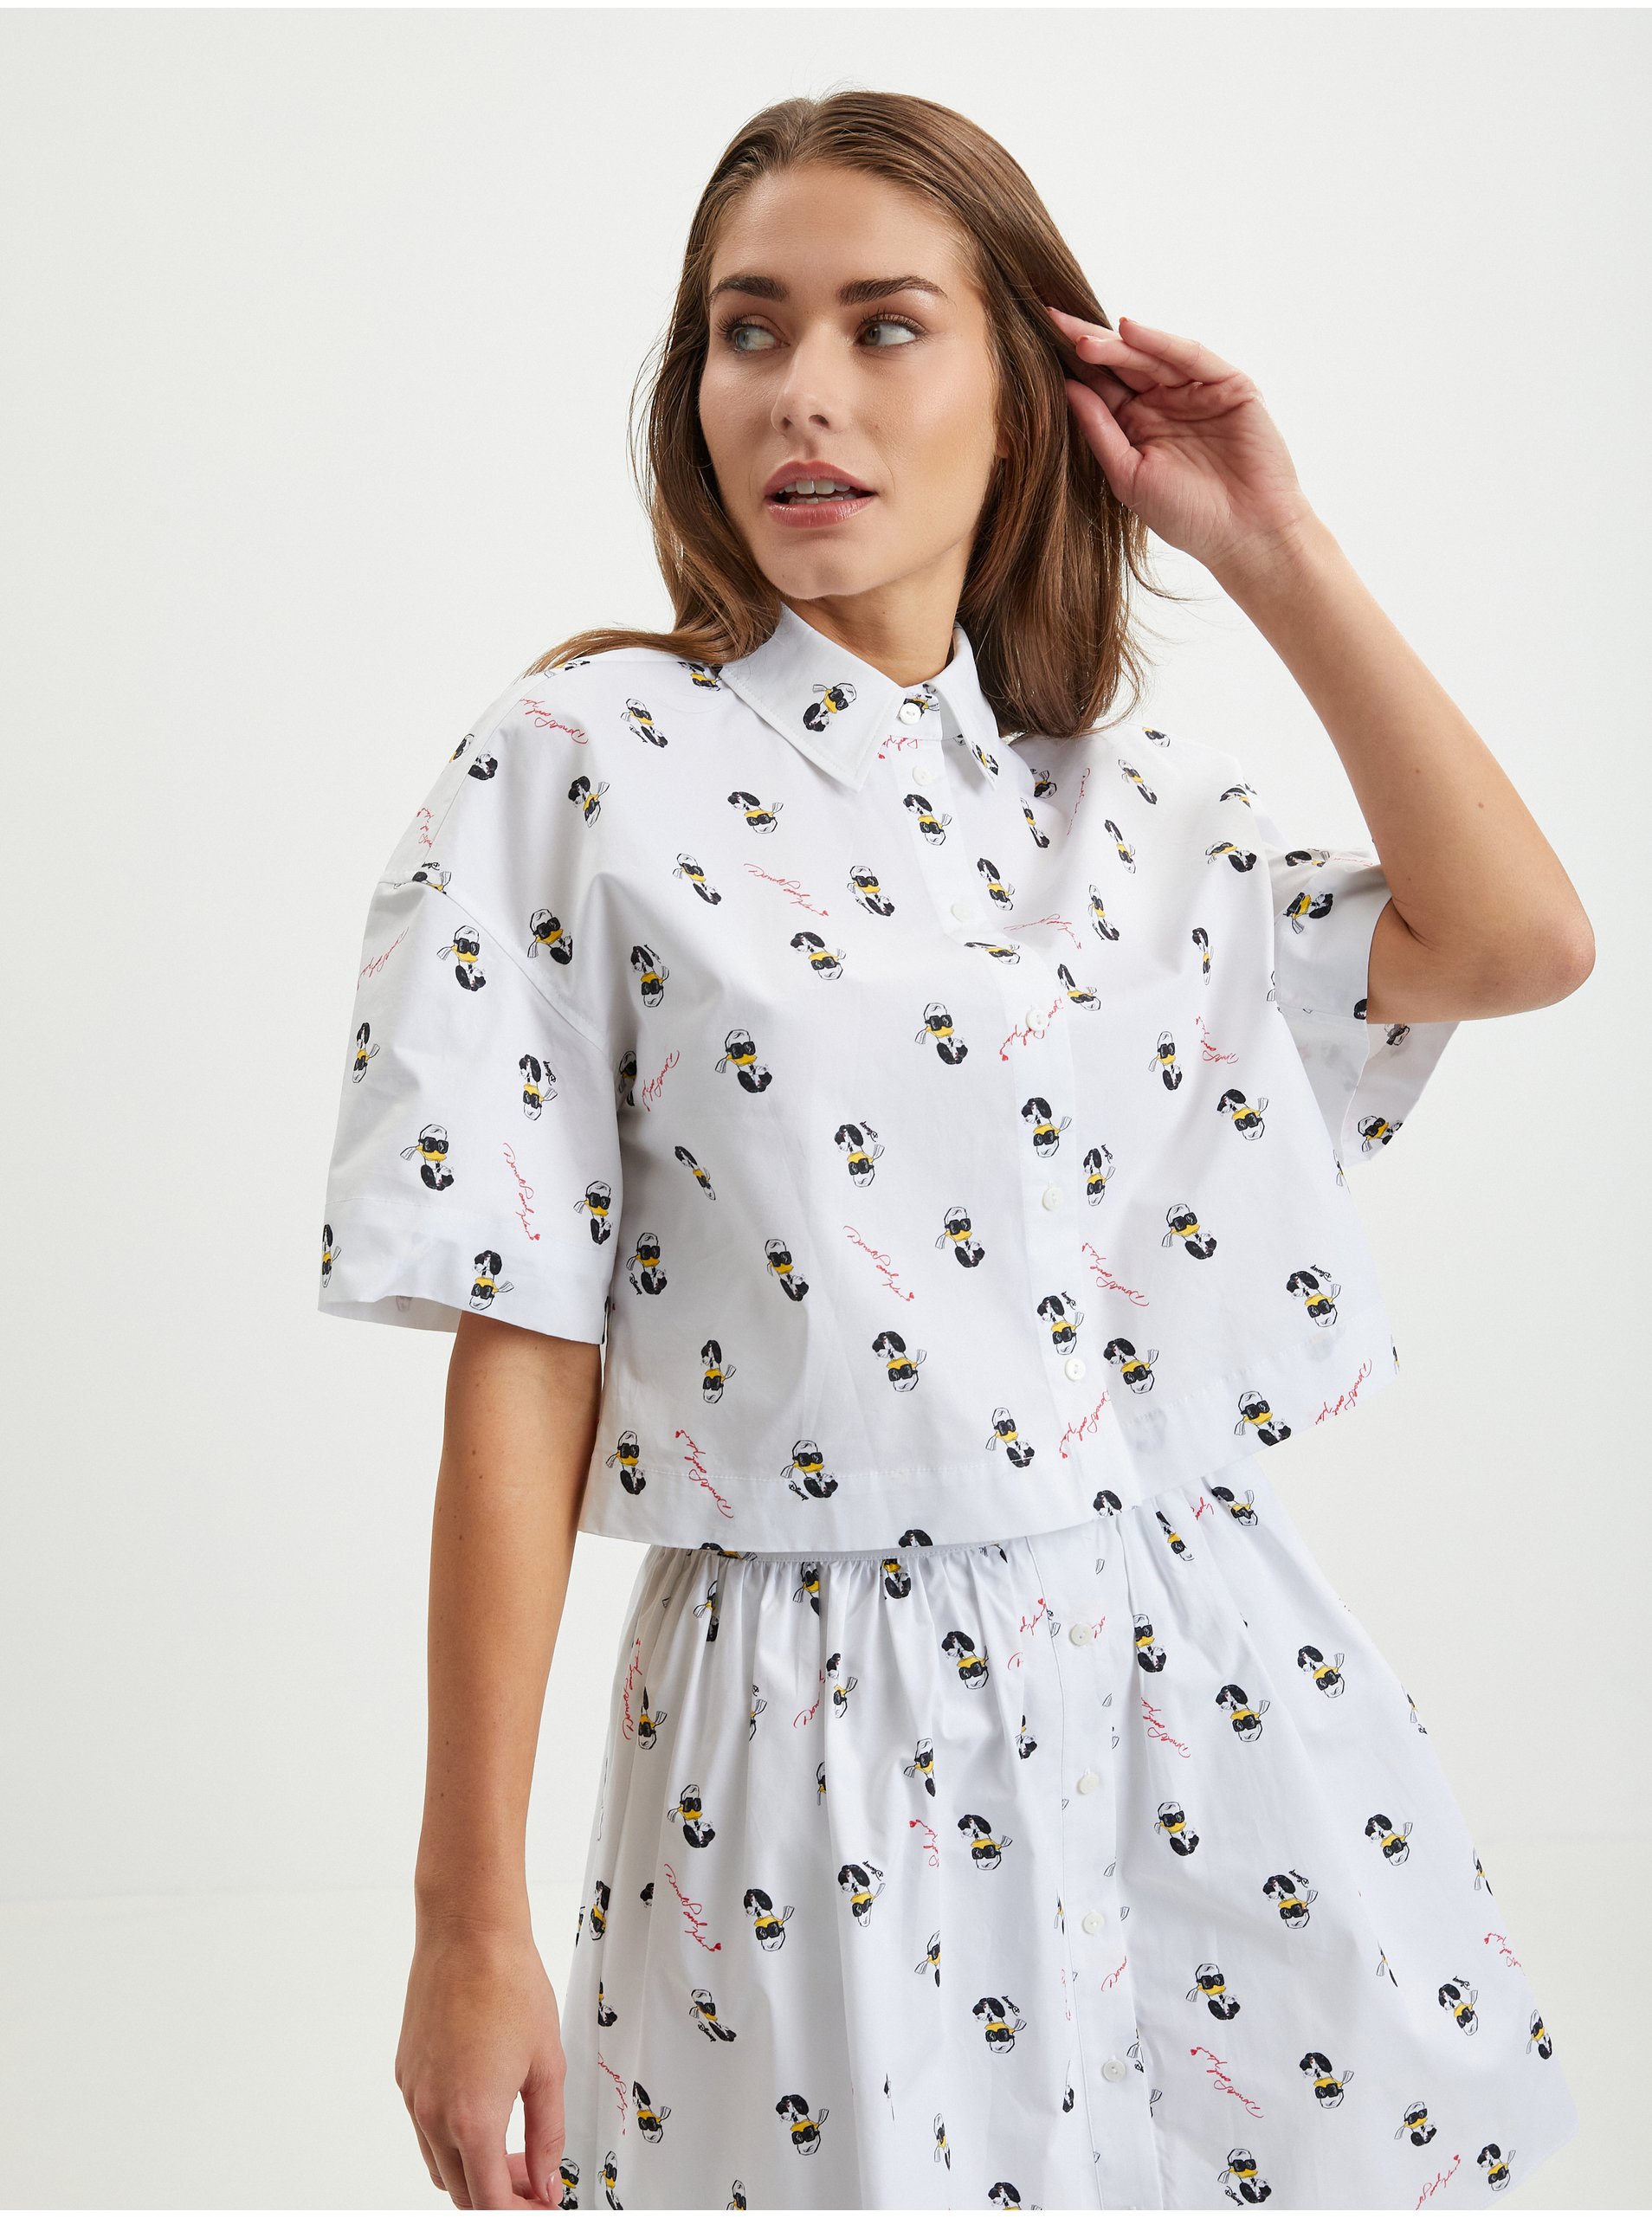 E-shop Bílá dámská vzorovaná košile KARL LAGERFELD x Disney